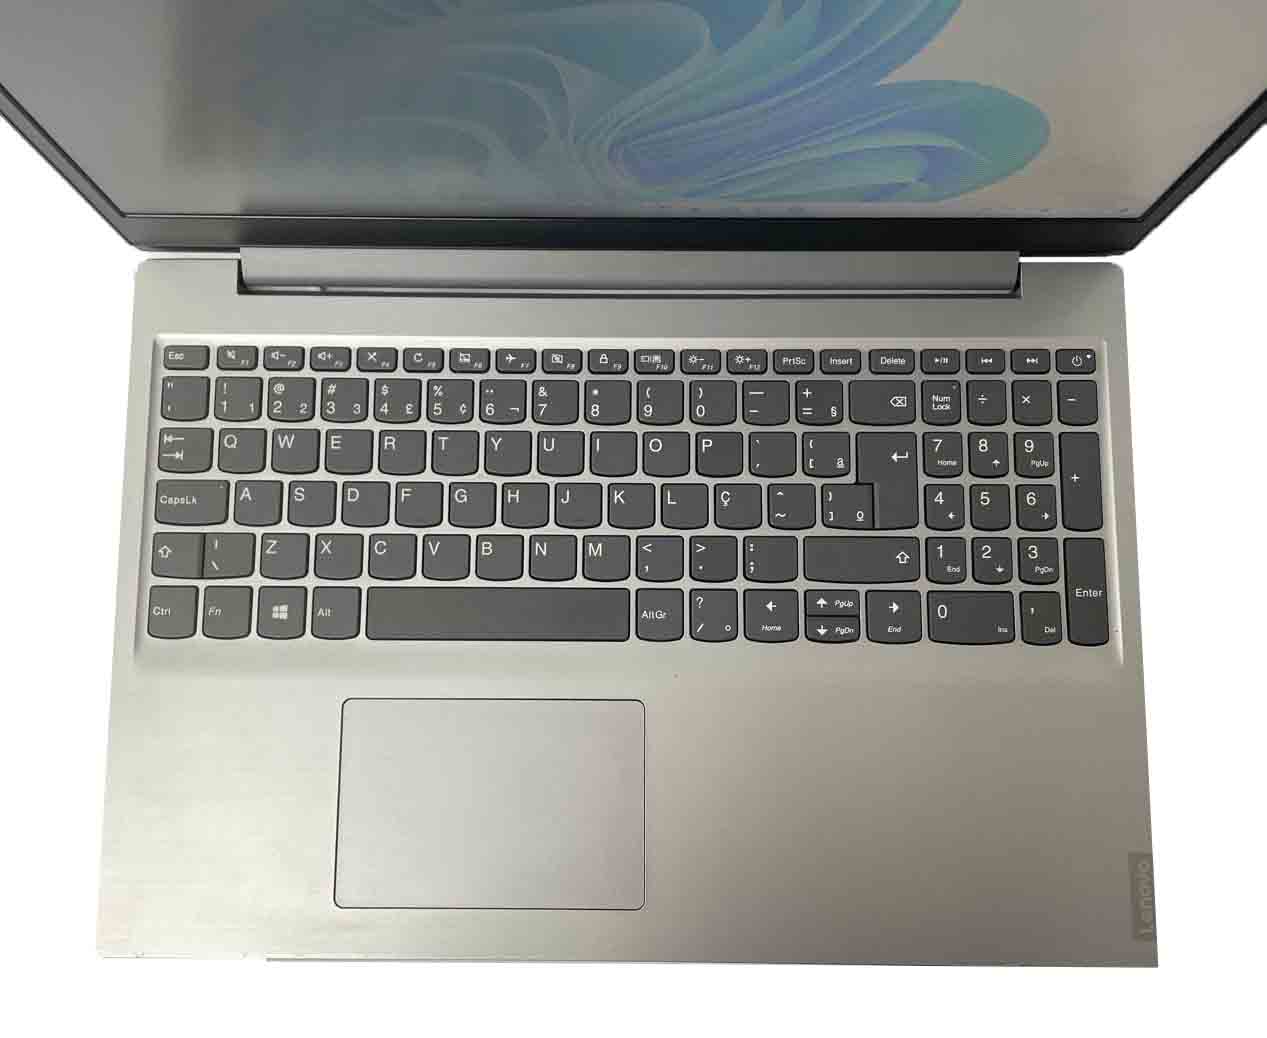 Notebook Lenovo, IdeaPad S145, Tela 15.6